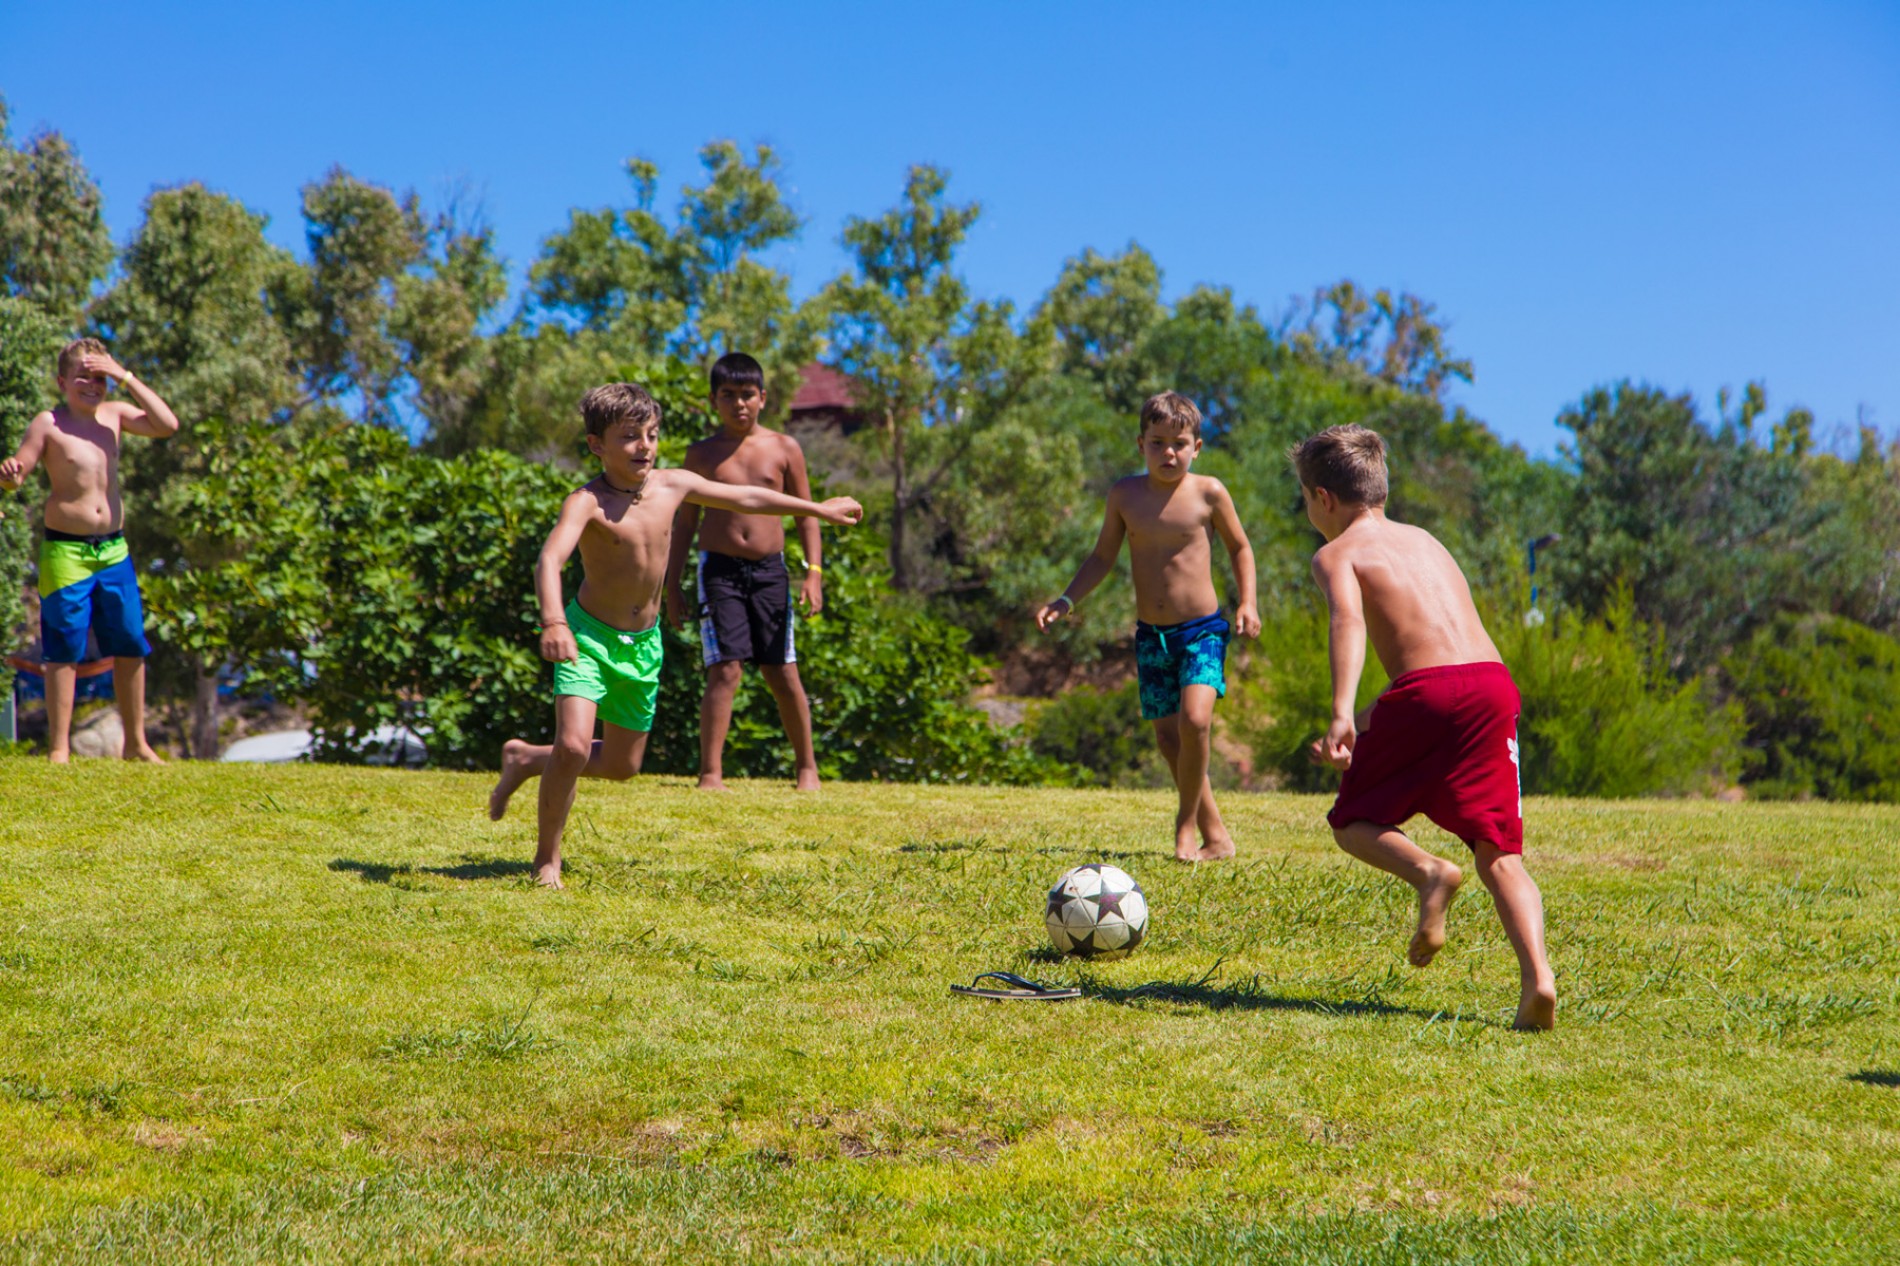 bambini-che-giocano-a-calcio-vacanza-in-sardegna